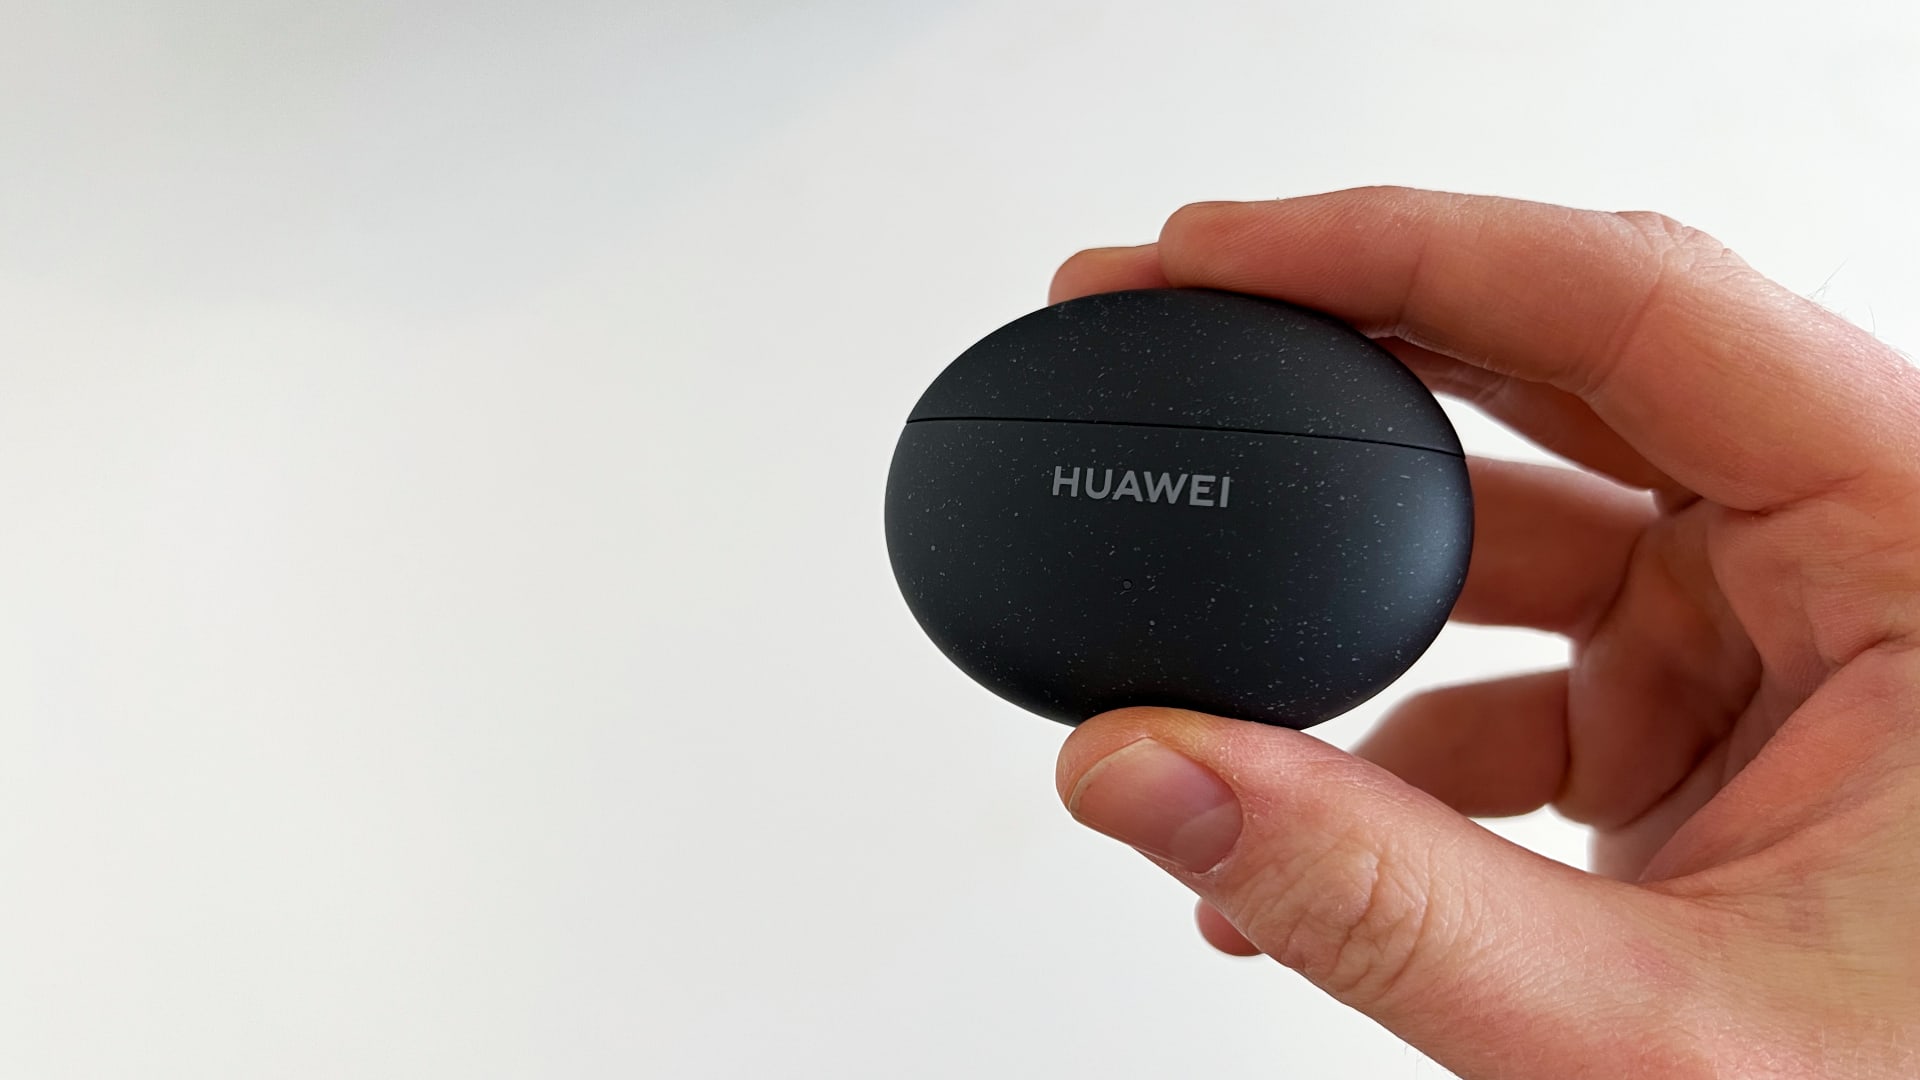 Ørepropper av typen Huawei Freebuds 5i i en hånd mot en hvit bakgrunn.